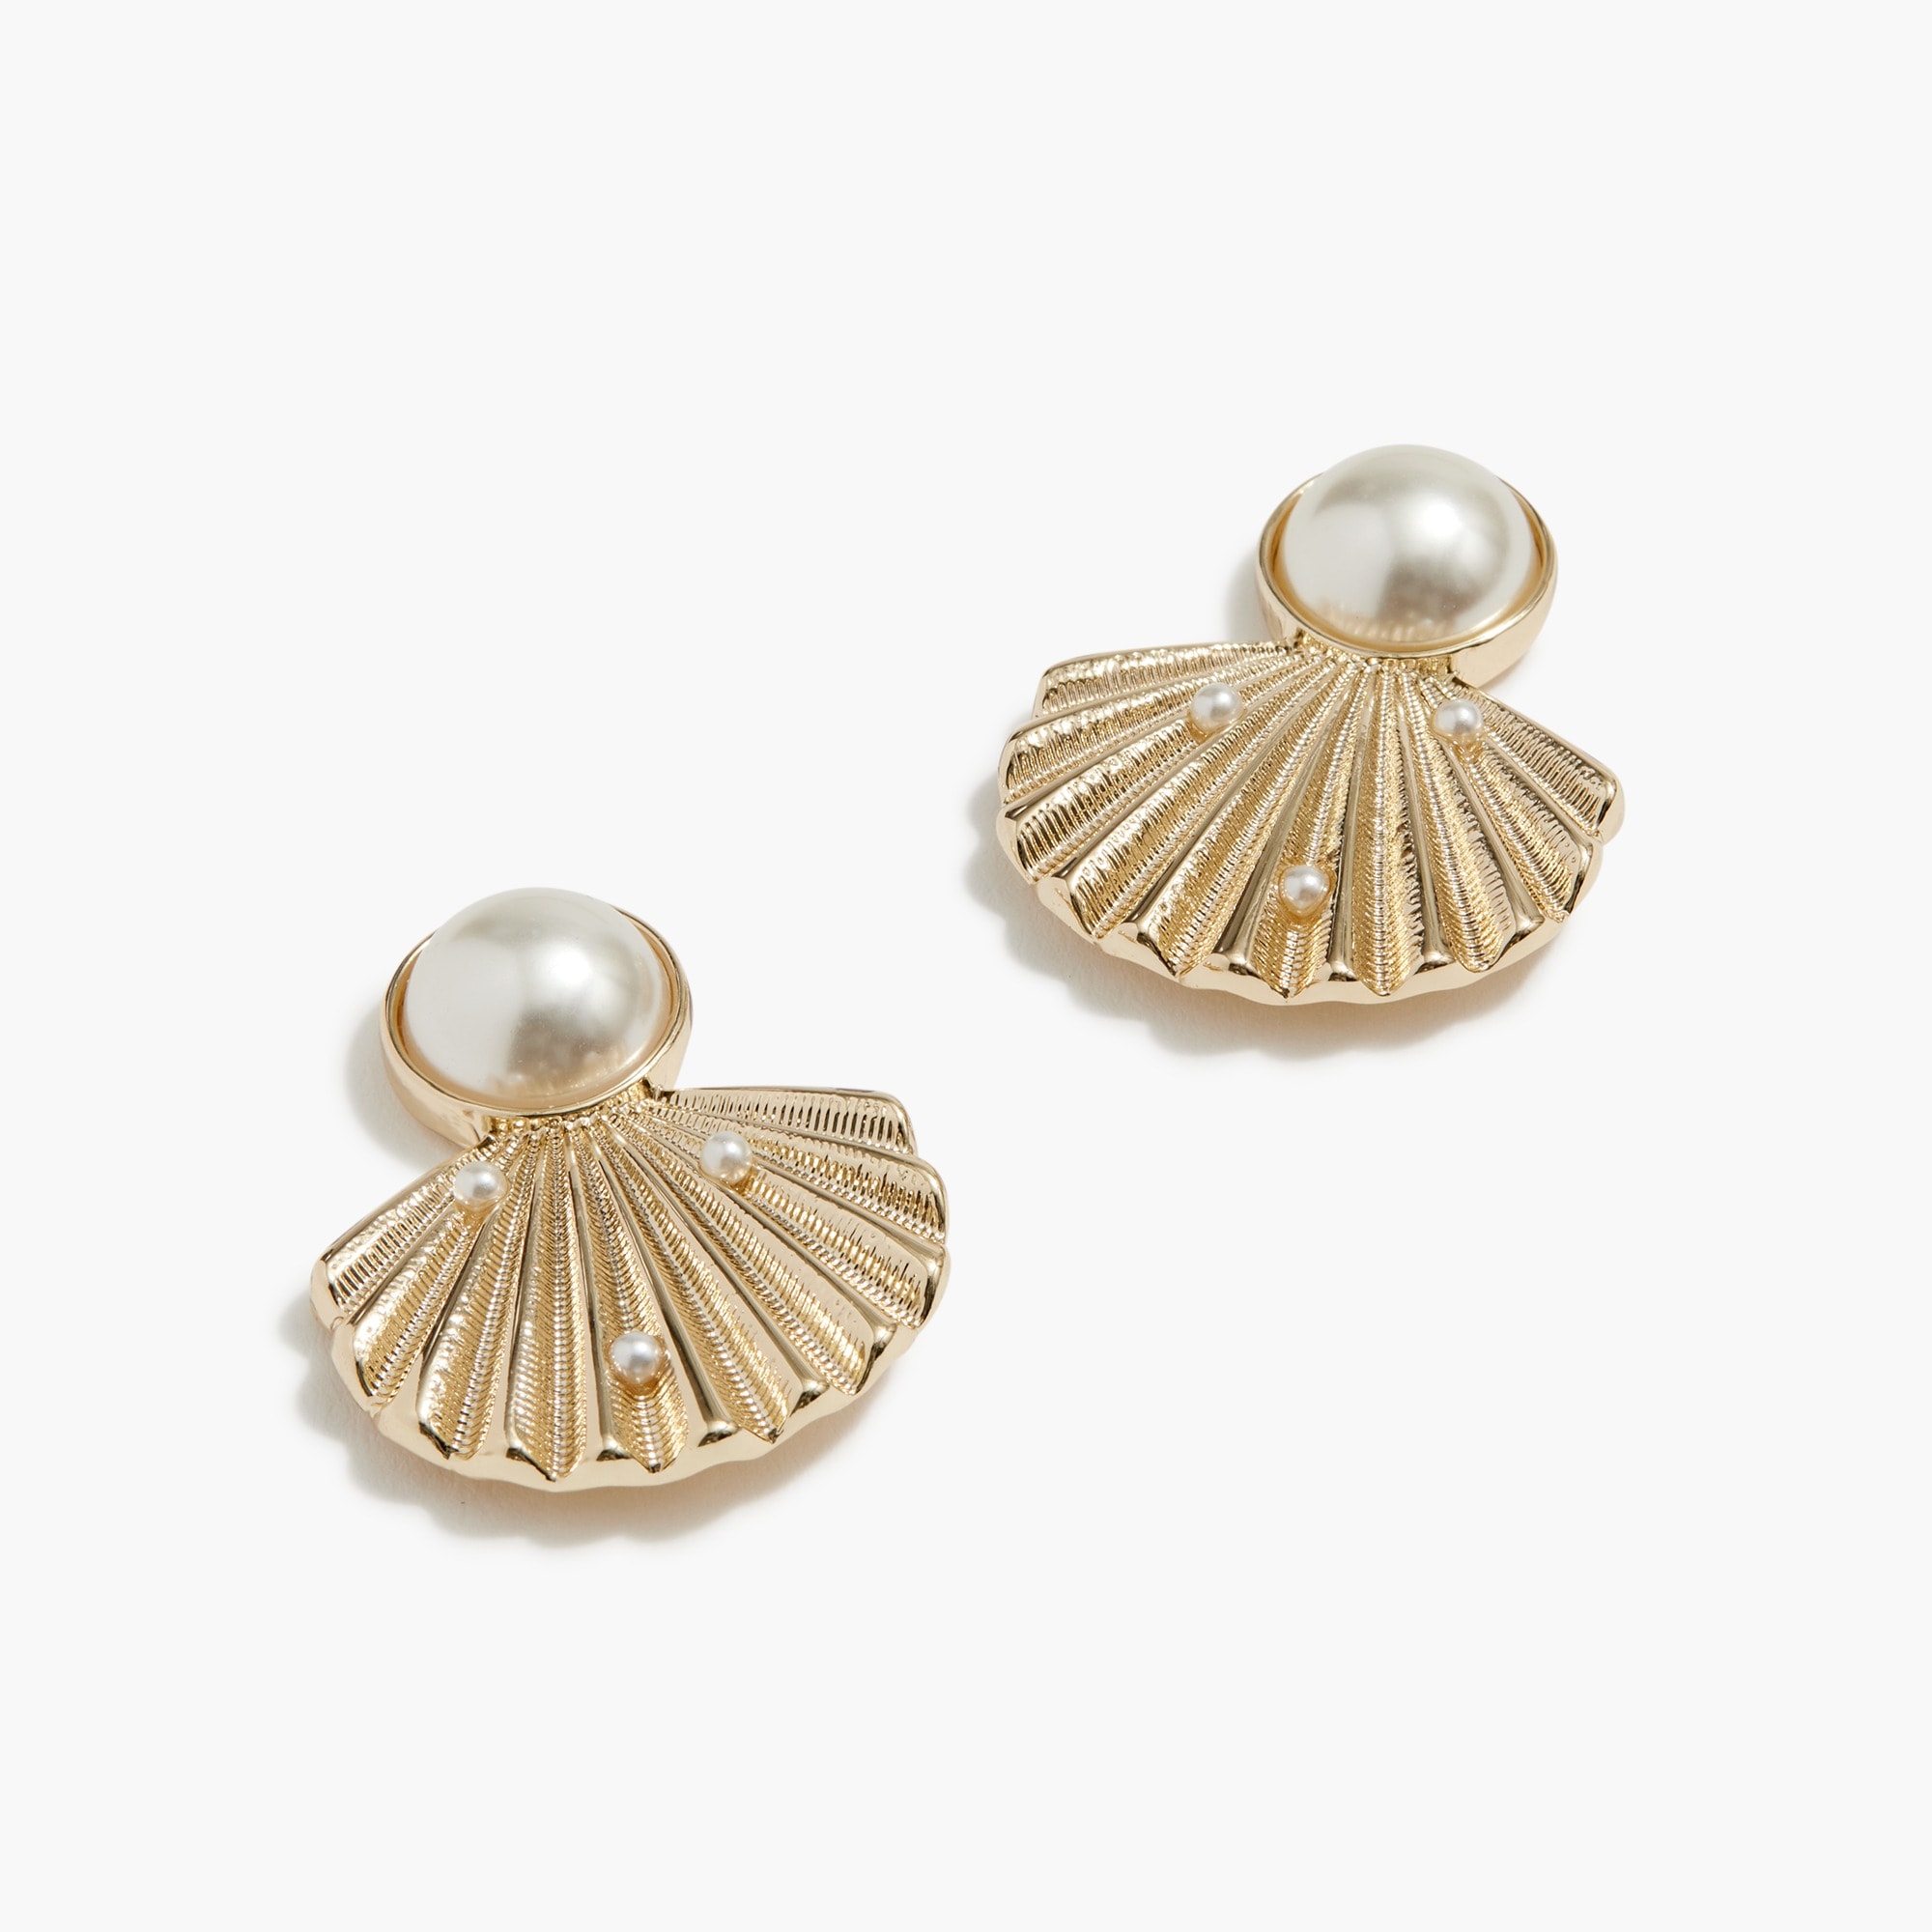  Pearl seashell statement earrings